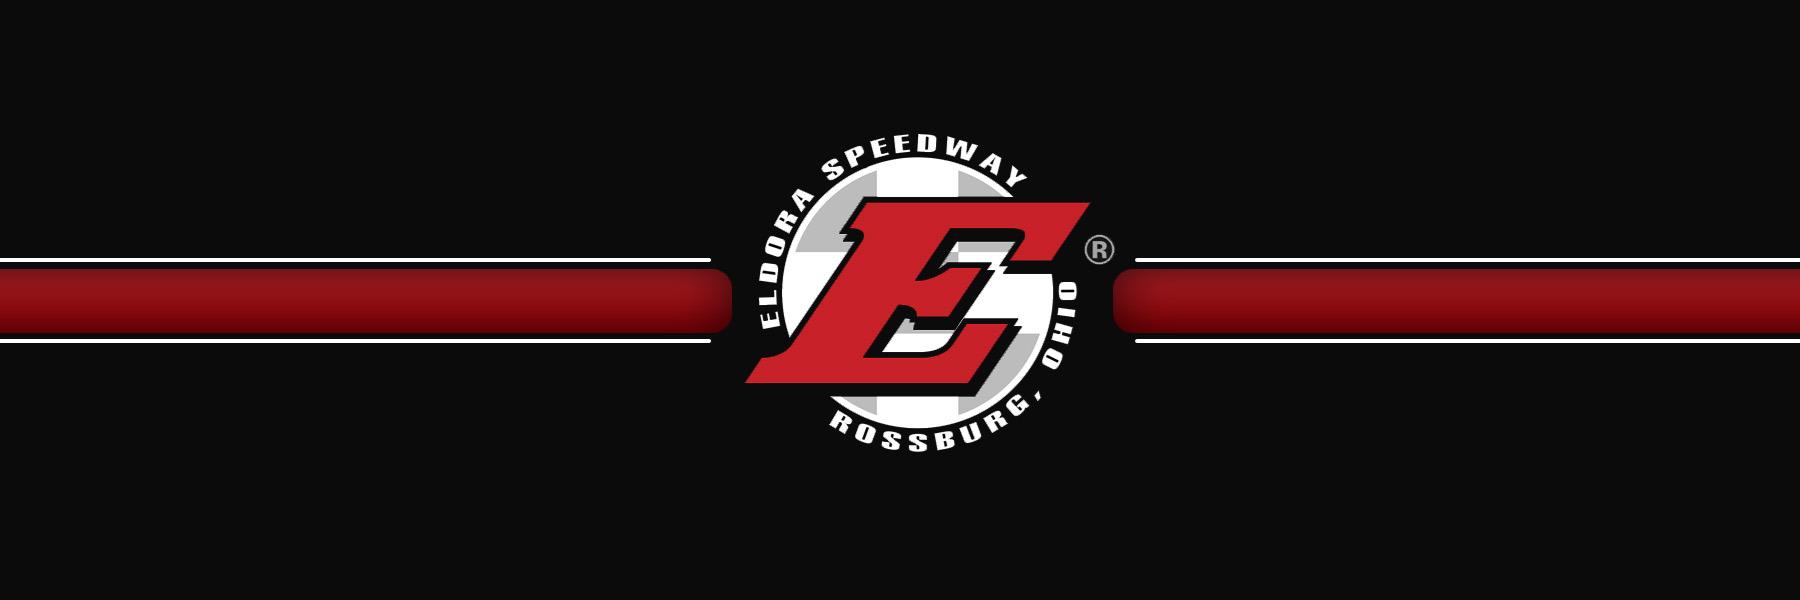 7/14/2018 - Eldora Speedway